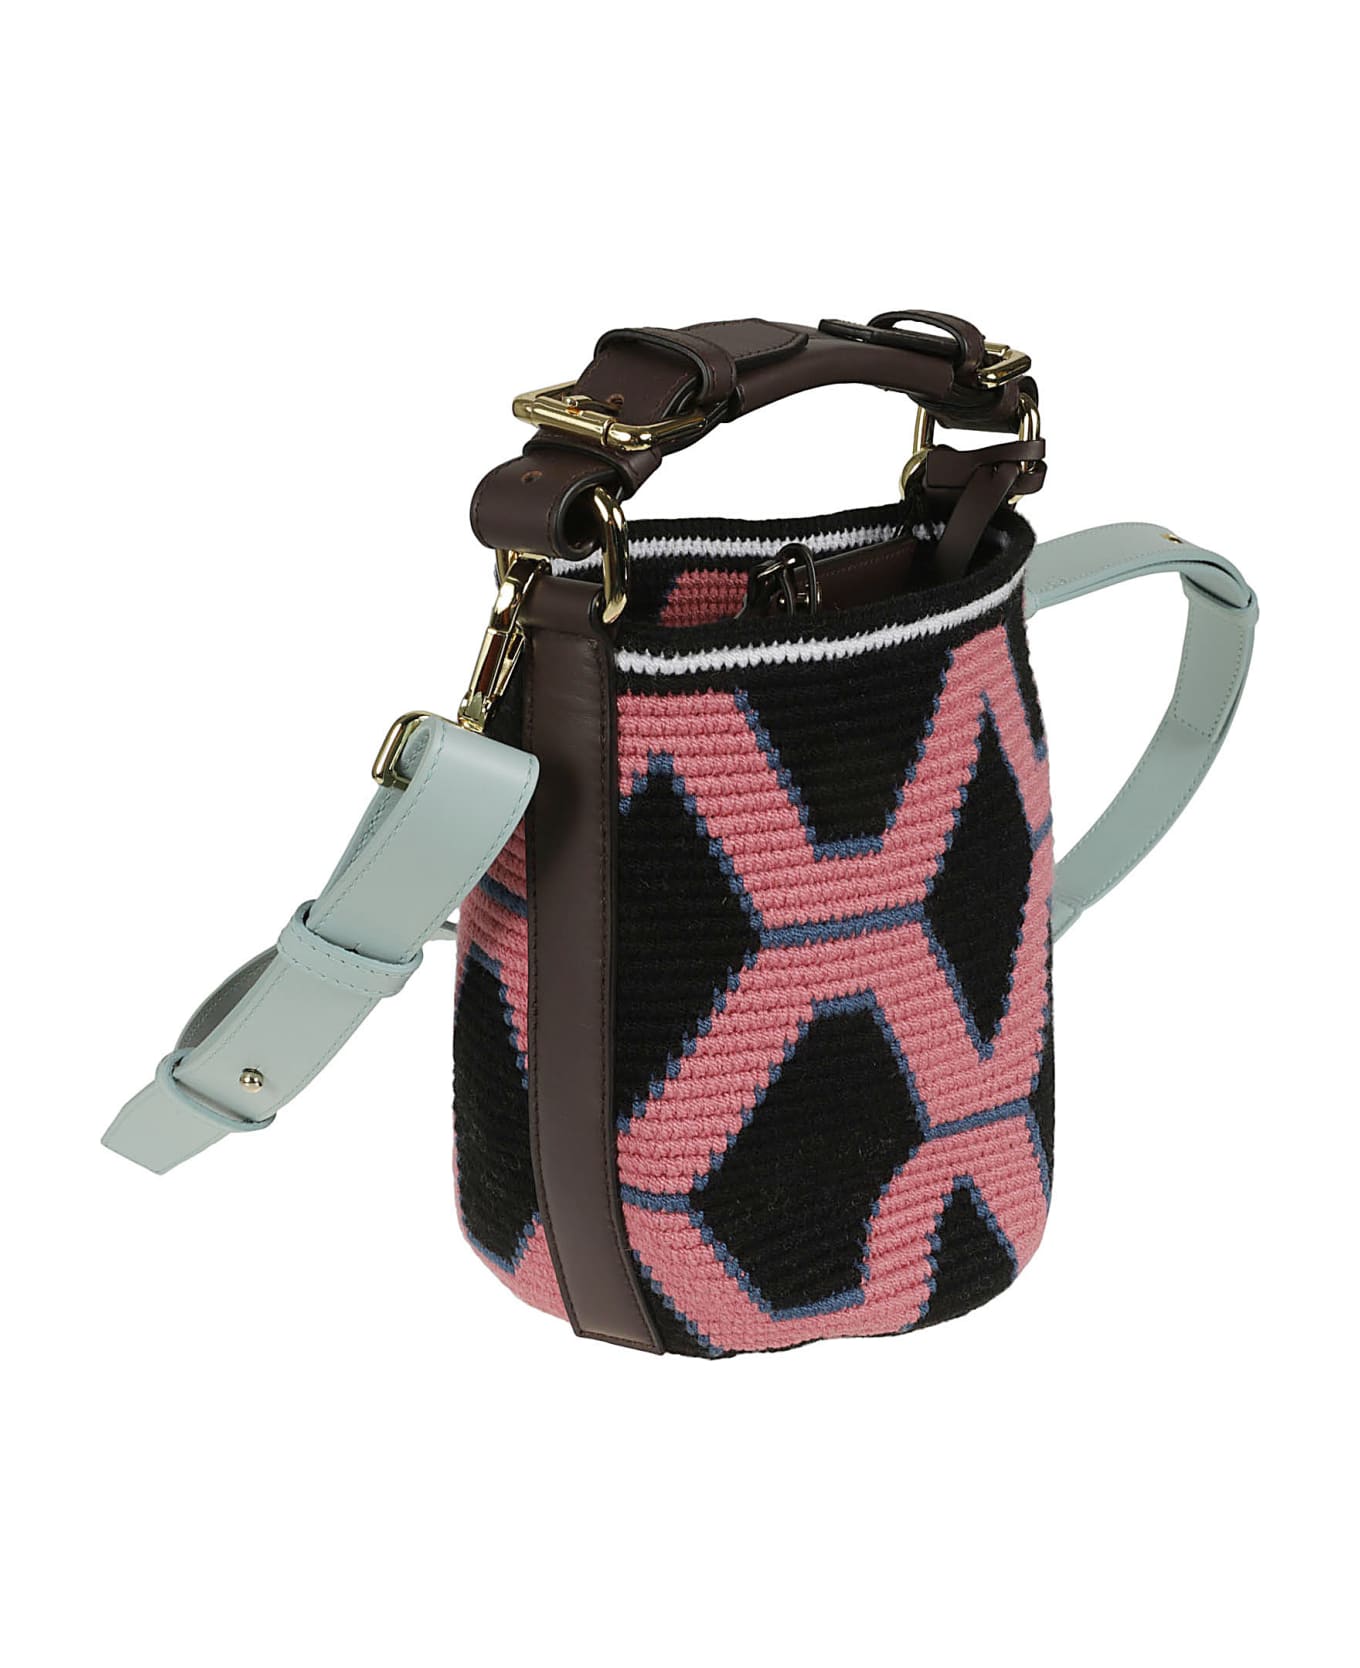 Colville Multi-strap Bucket Bag - Nero/rosa トートバッグ